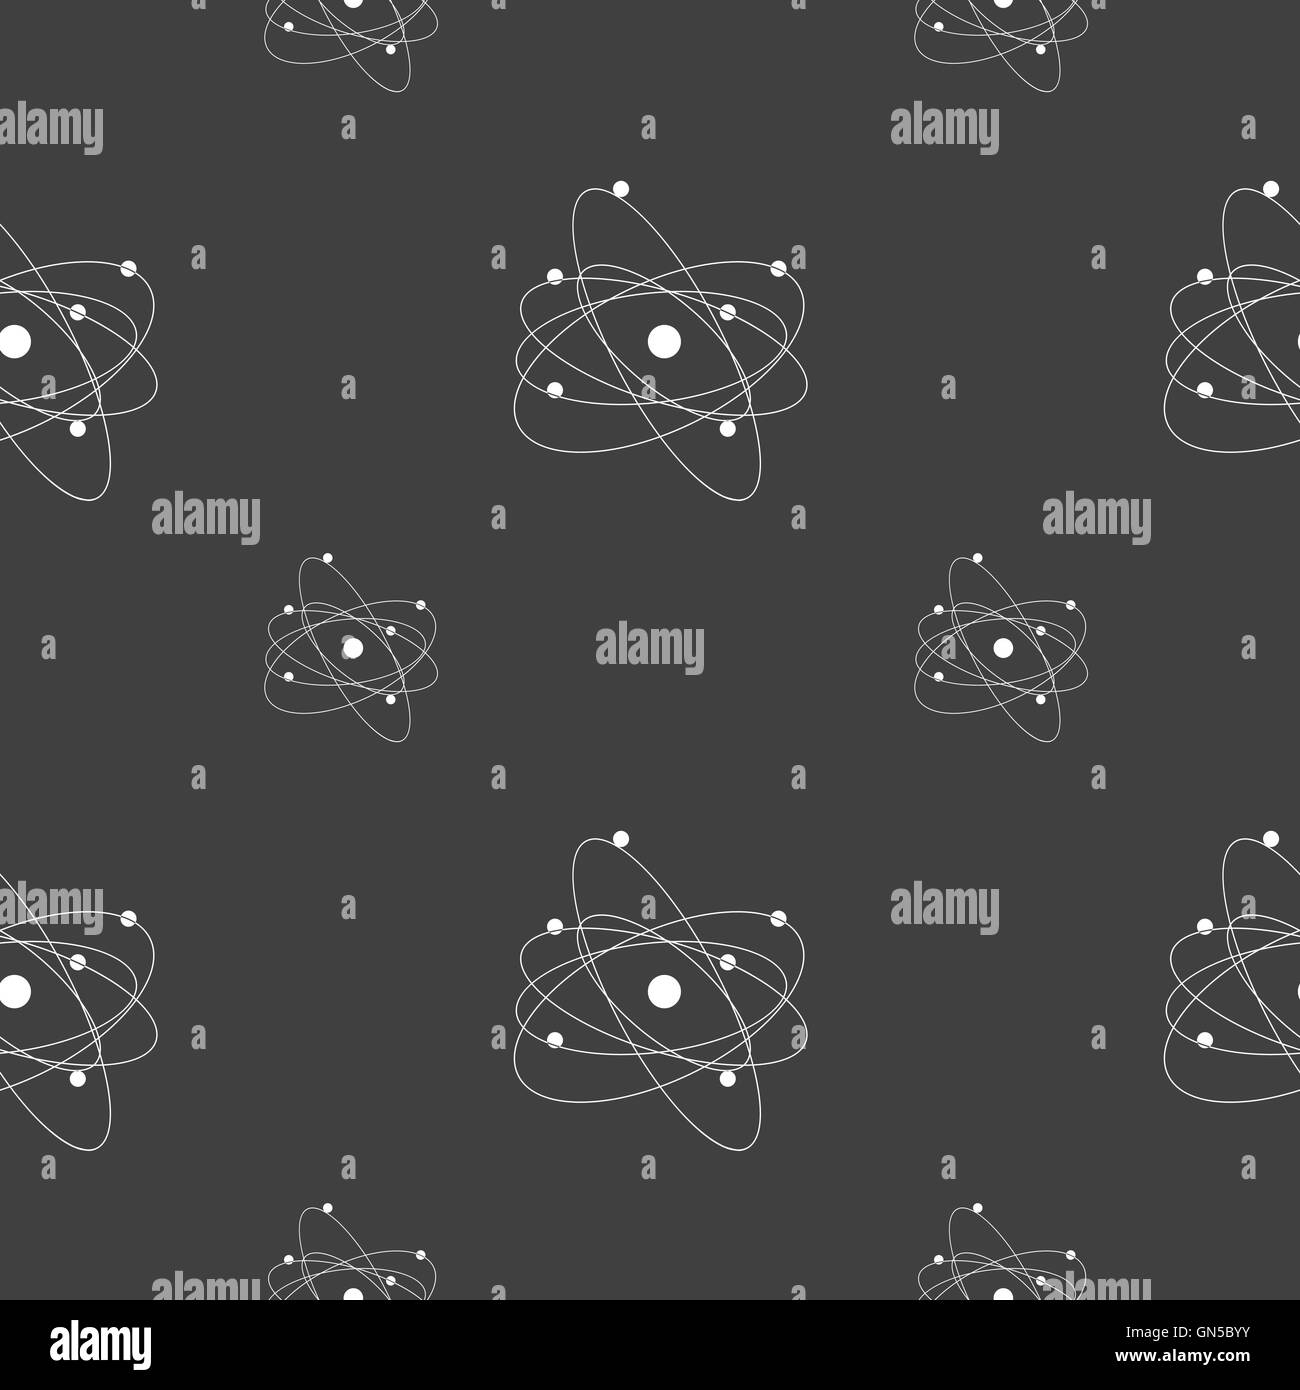 Physik, Atom, Urknall Symbol Zeichen. Nahtlose Muster auf einem grauen Hintergrund. Vektor Stock Vektor